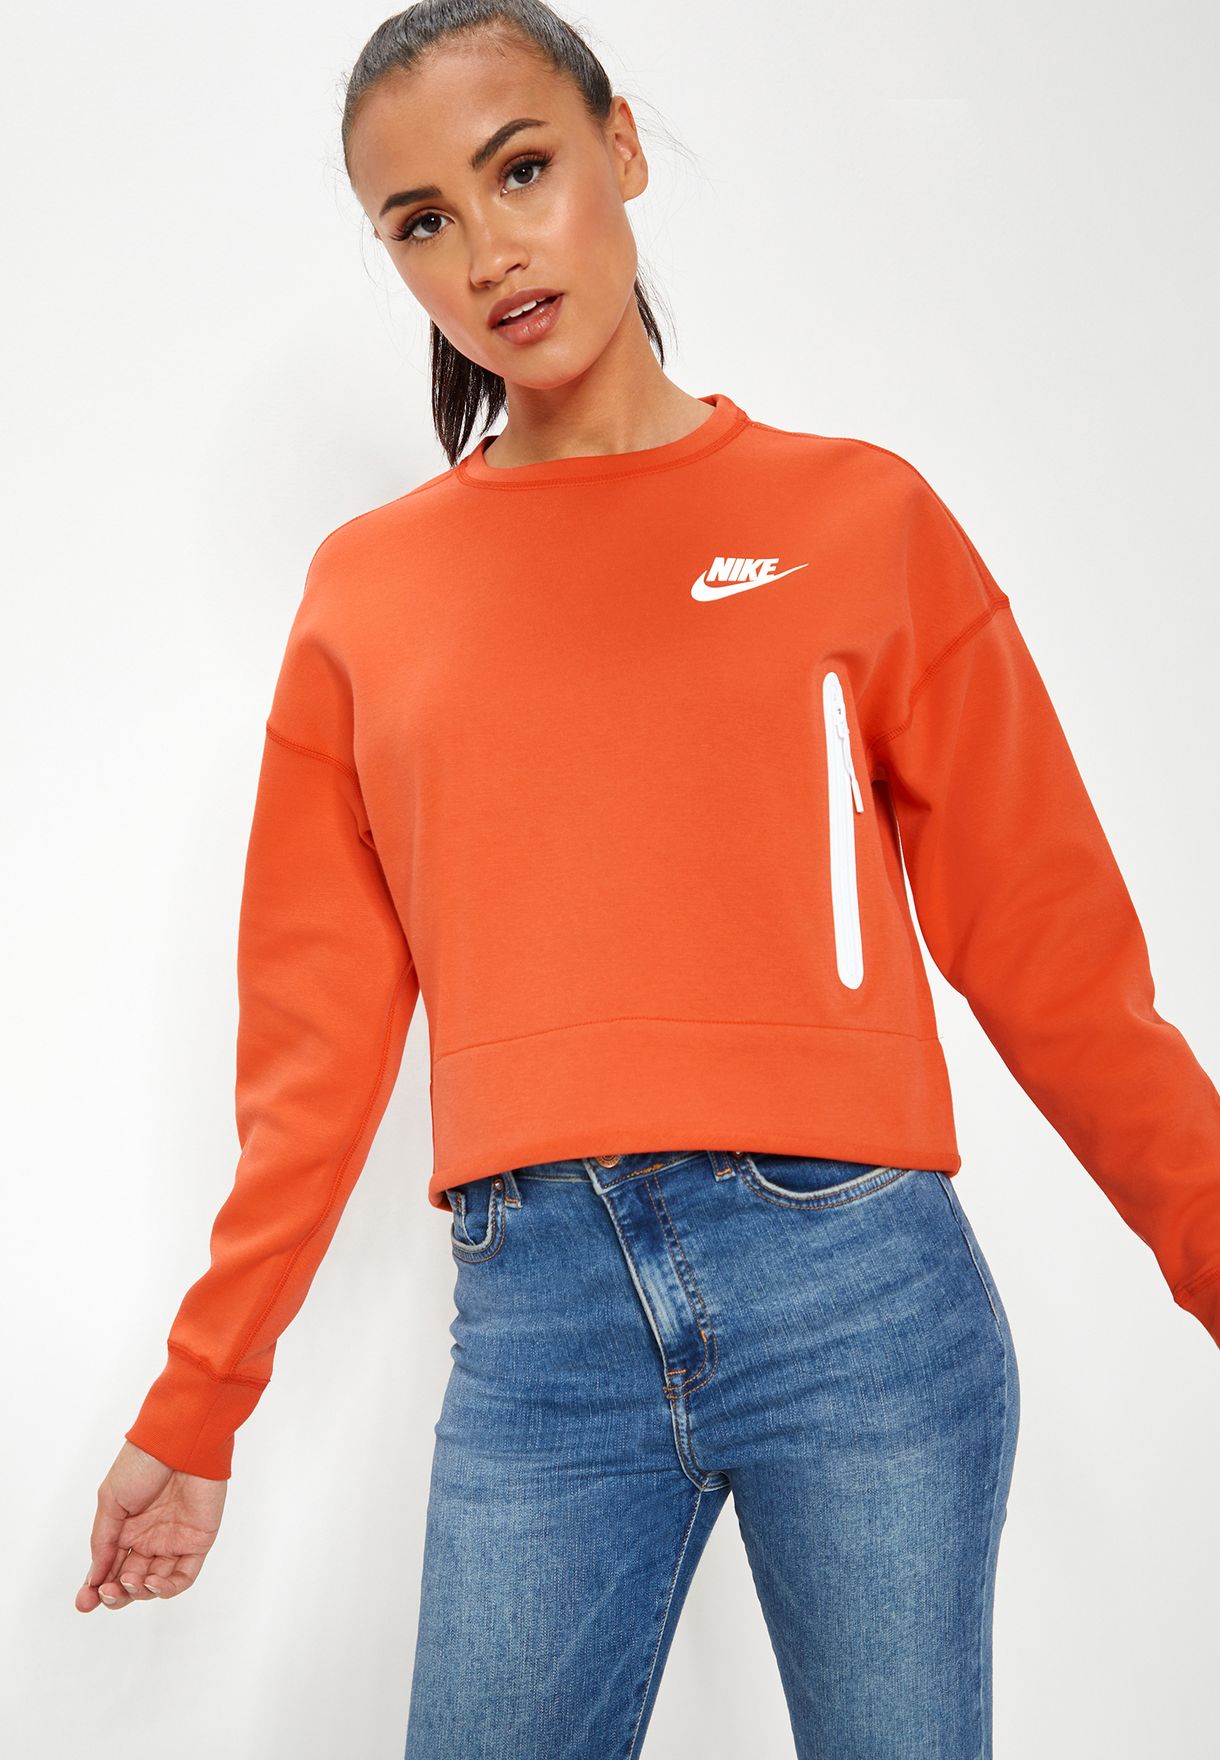 nike orange women's clothing